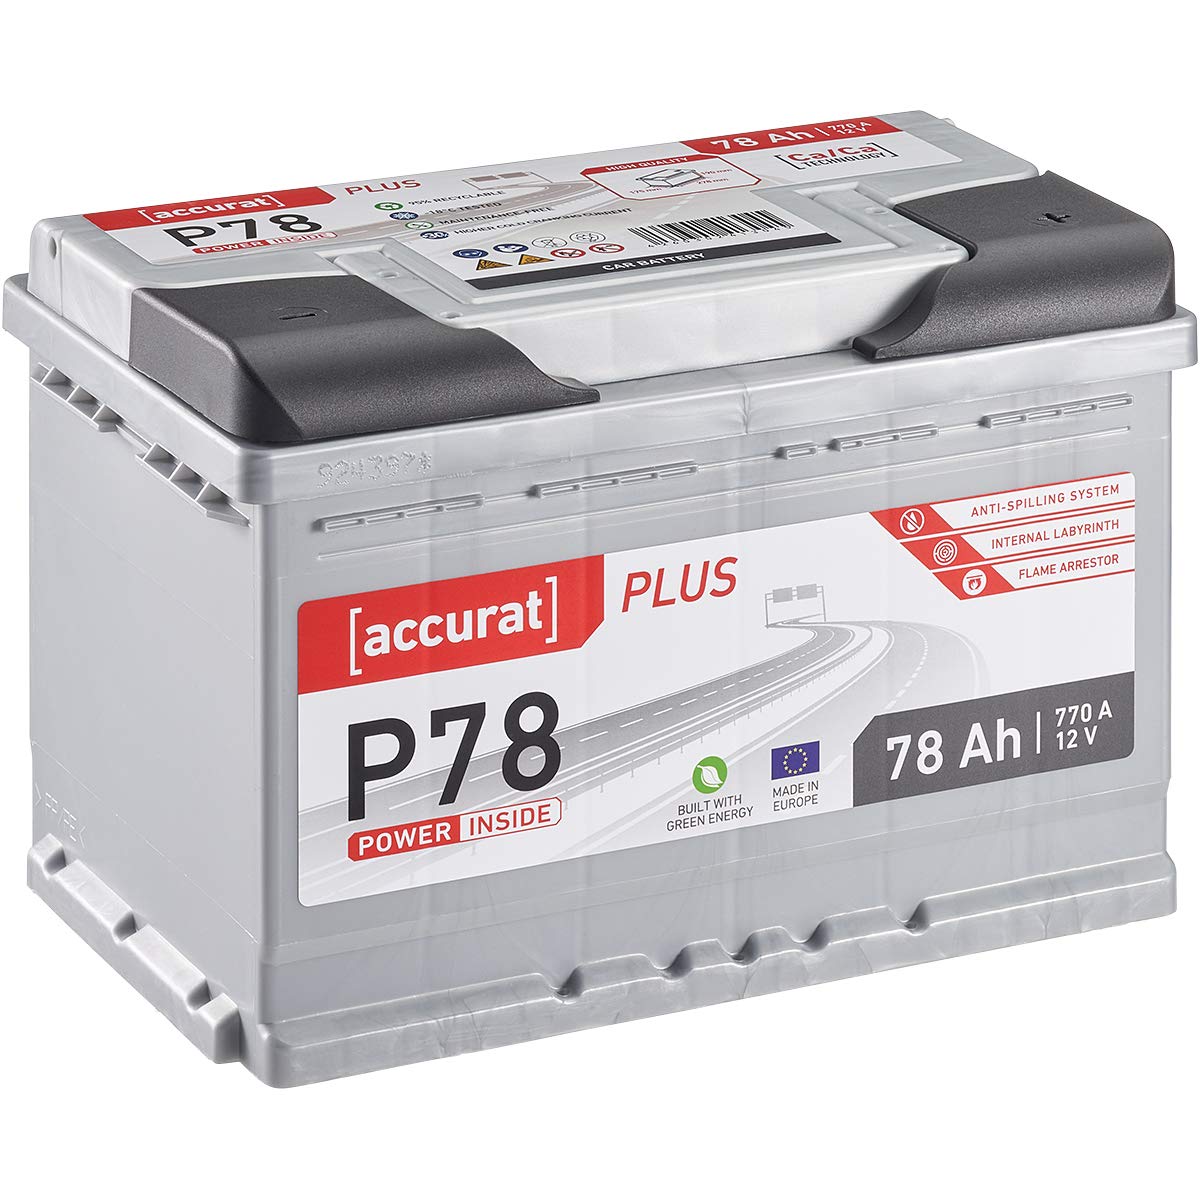 Accurat Plus P78 Autobatterie - 12V, 78Ah, 770A, zyklenfest, wartungsfrei, 35% mehr Startleistung, Ca-Technologie, Kaltstartkraft - Starterbatterie, Nassbatterie, Blei-Säure Batterie von Accurat